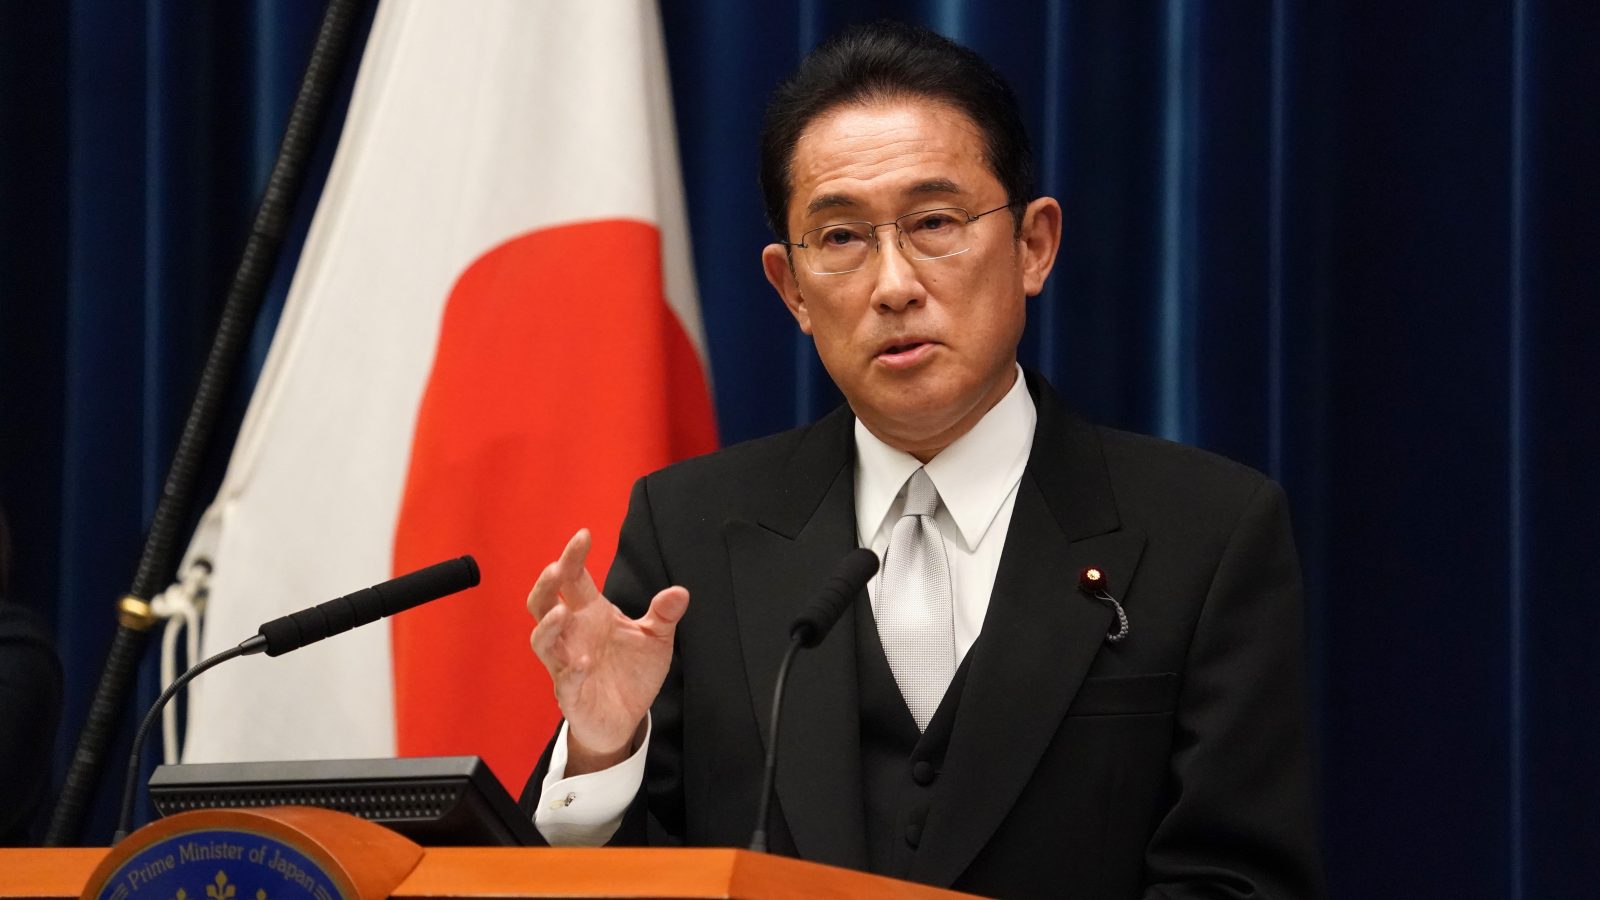 رئيس وزراء اليابان يجدد تعهده بالتركيز على مكافحة الوباء وخلق معايير رأسمالية جديدة